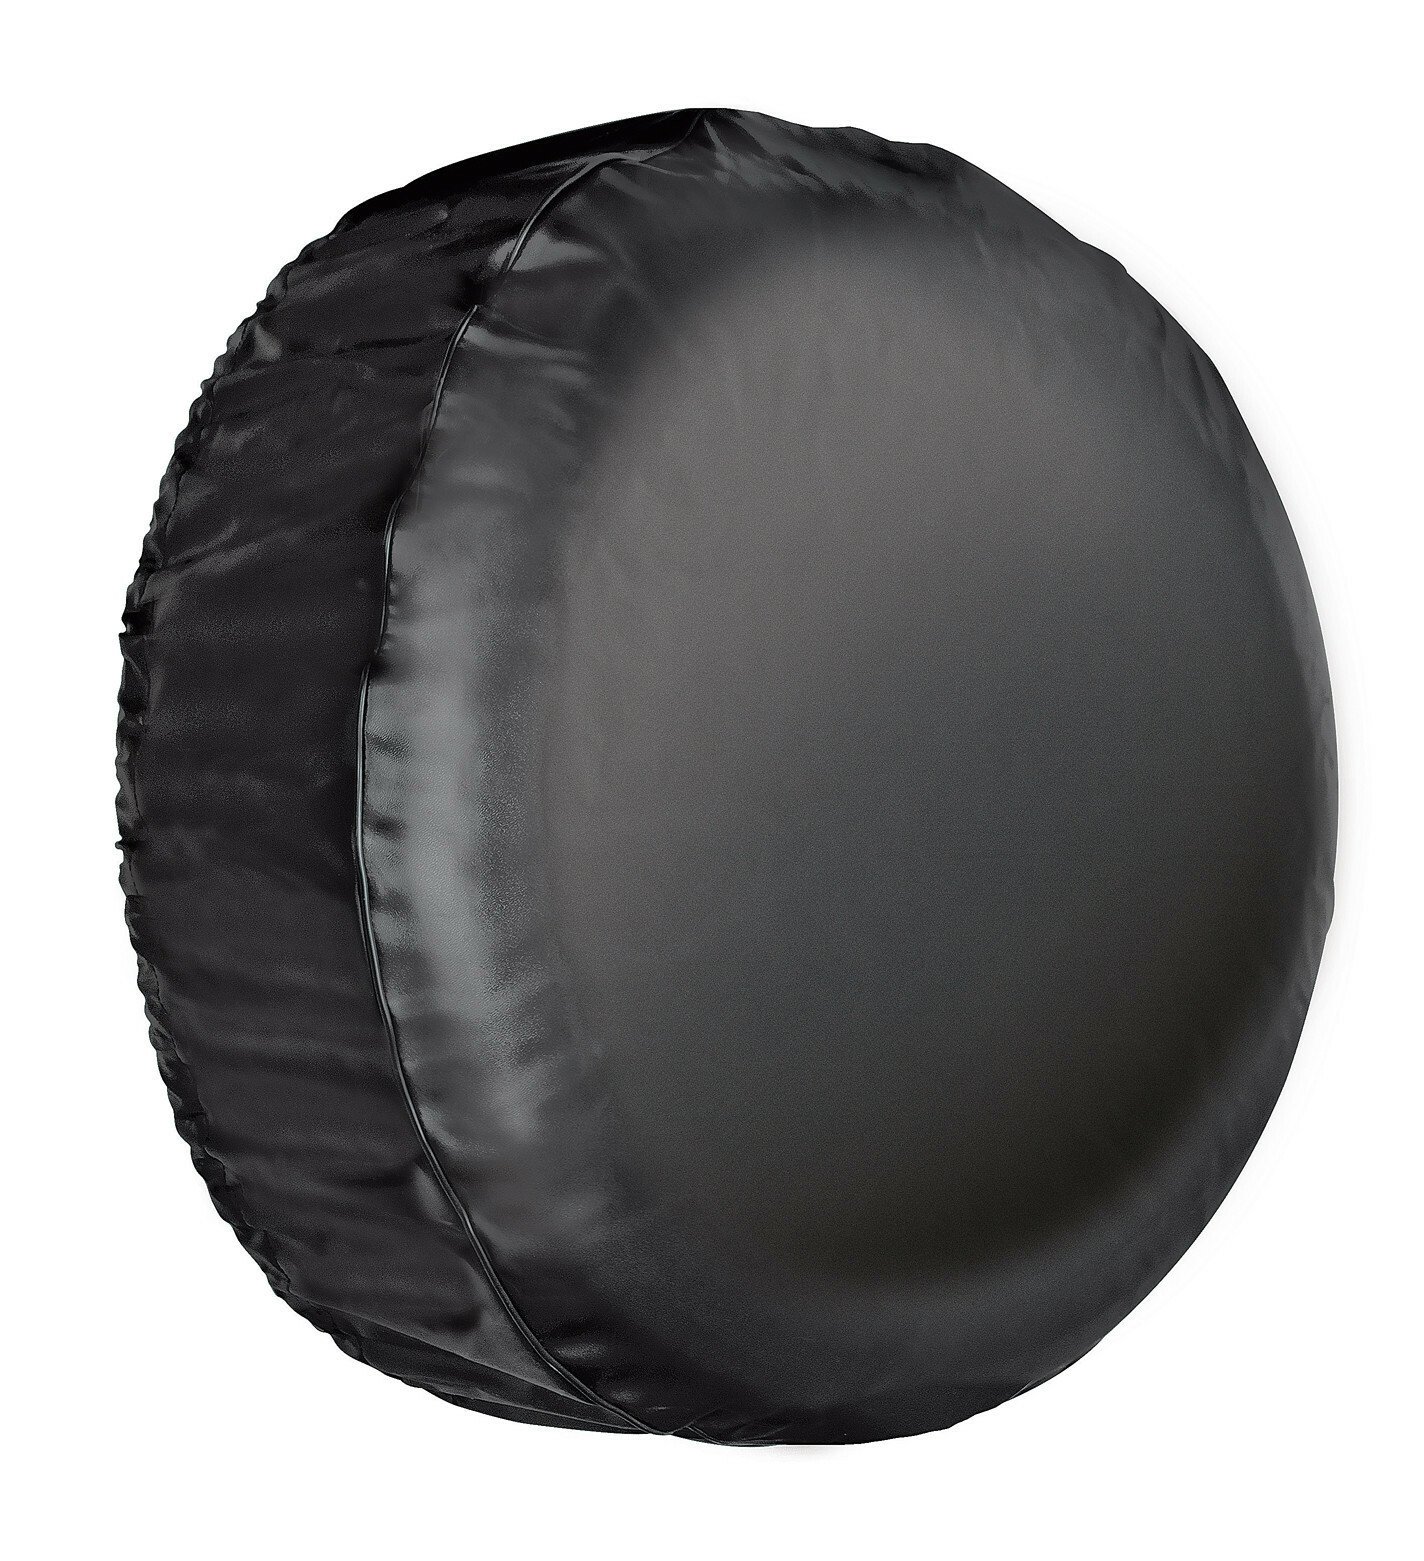 Spare tyre cover 4x4 - Ø78x28cm - XL thumb